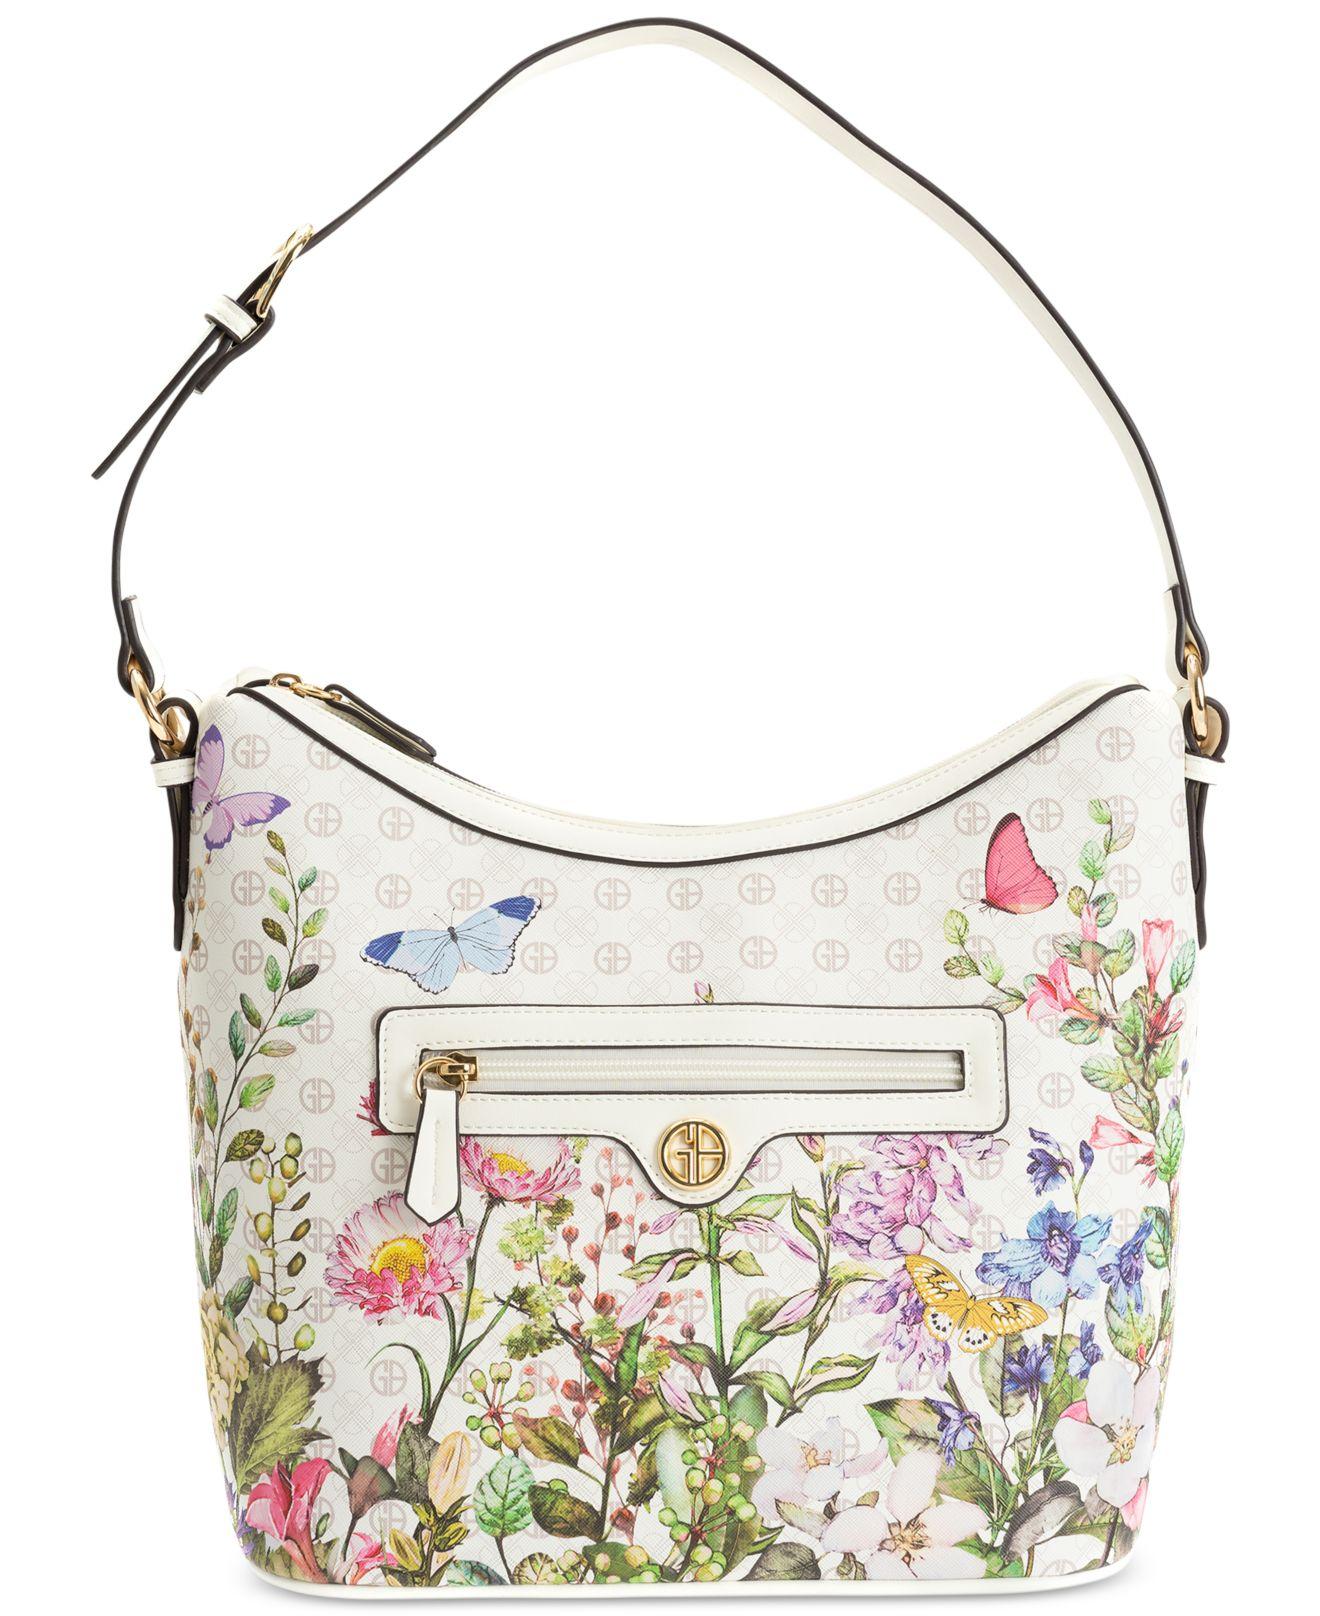 Giani Bernini Signature Floral Print Small Zip-top Hobo Bag in Pink